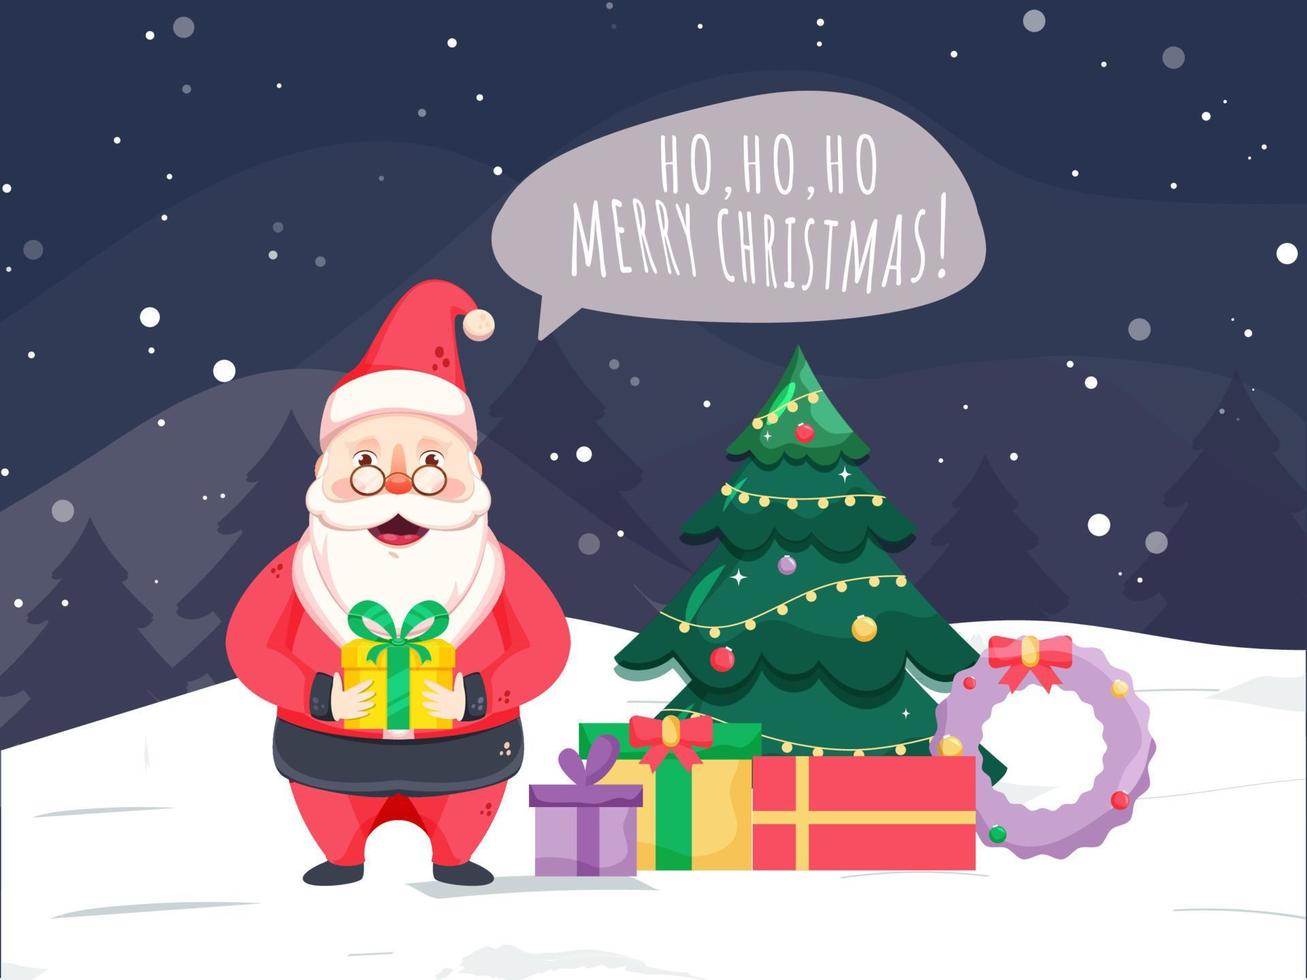 Illustration von Santa claus Sprichwort hallo, hallo, ho fröhlich Weihnachten mit Geschenk Kisten, Kranz und dekorativ Weihnachten Baum auf Schnee fallen Hintergrund. vektor